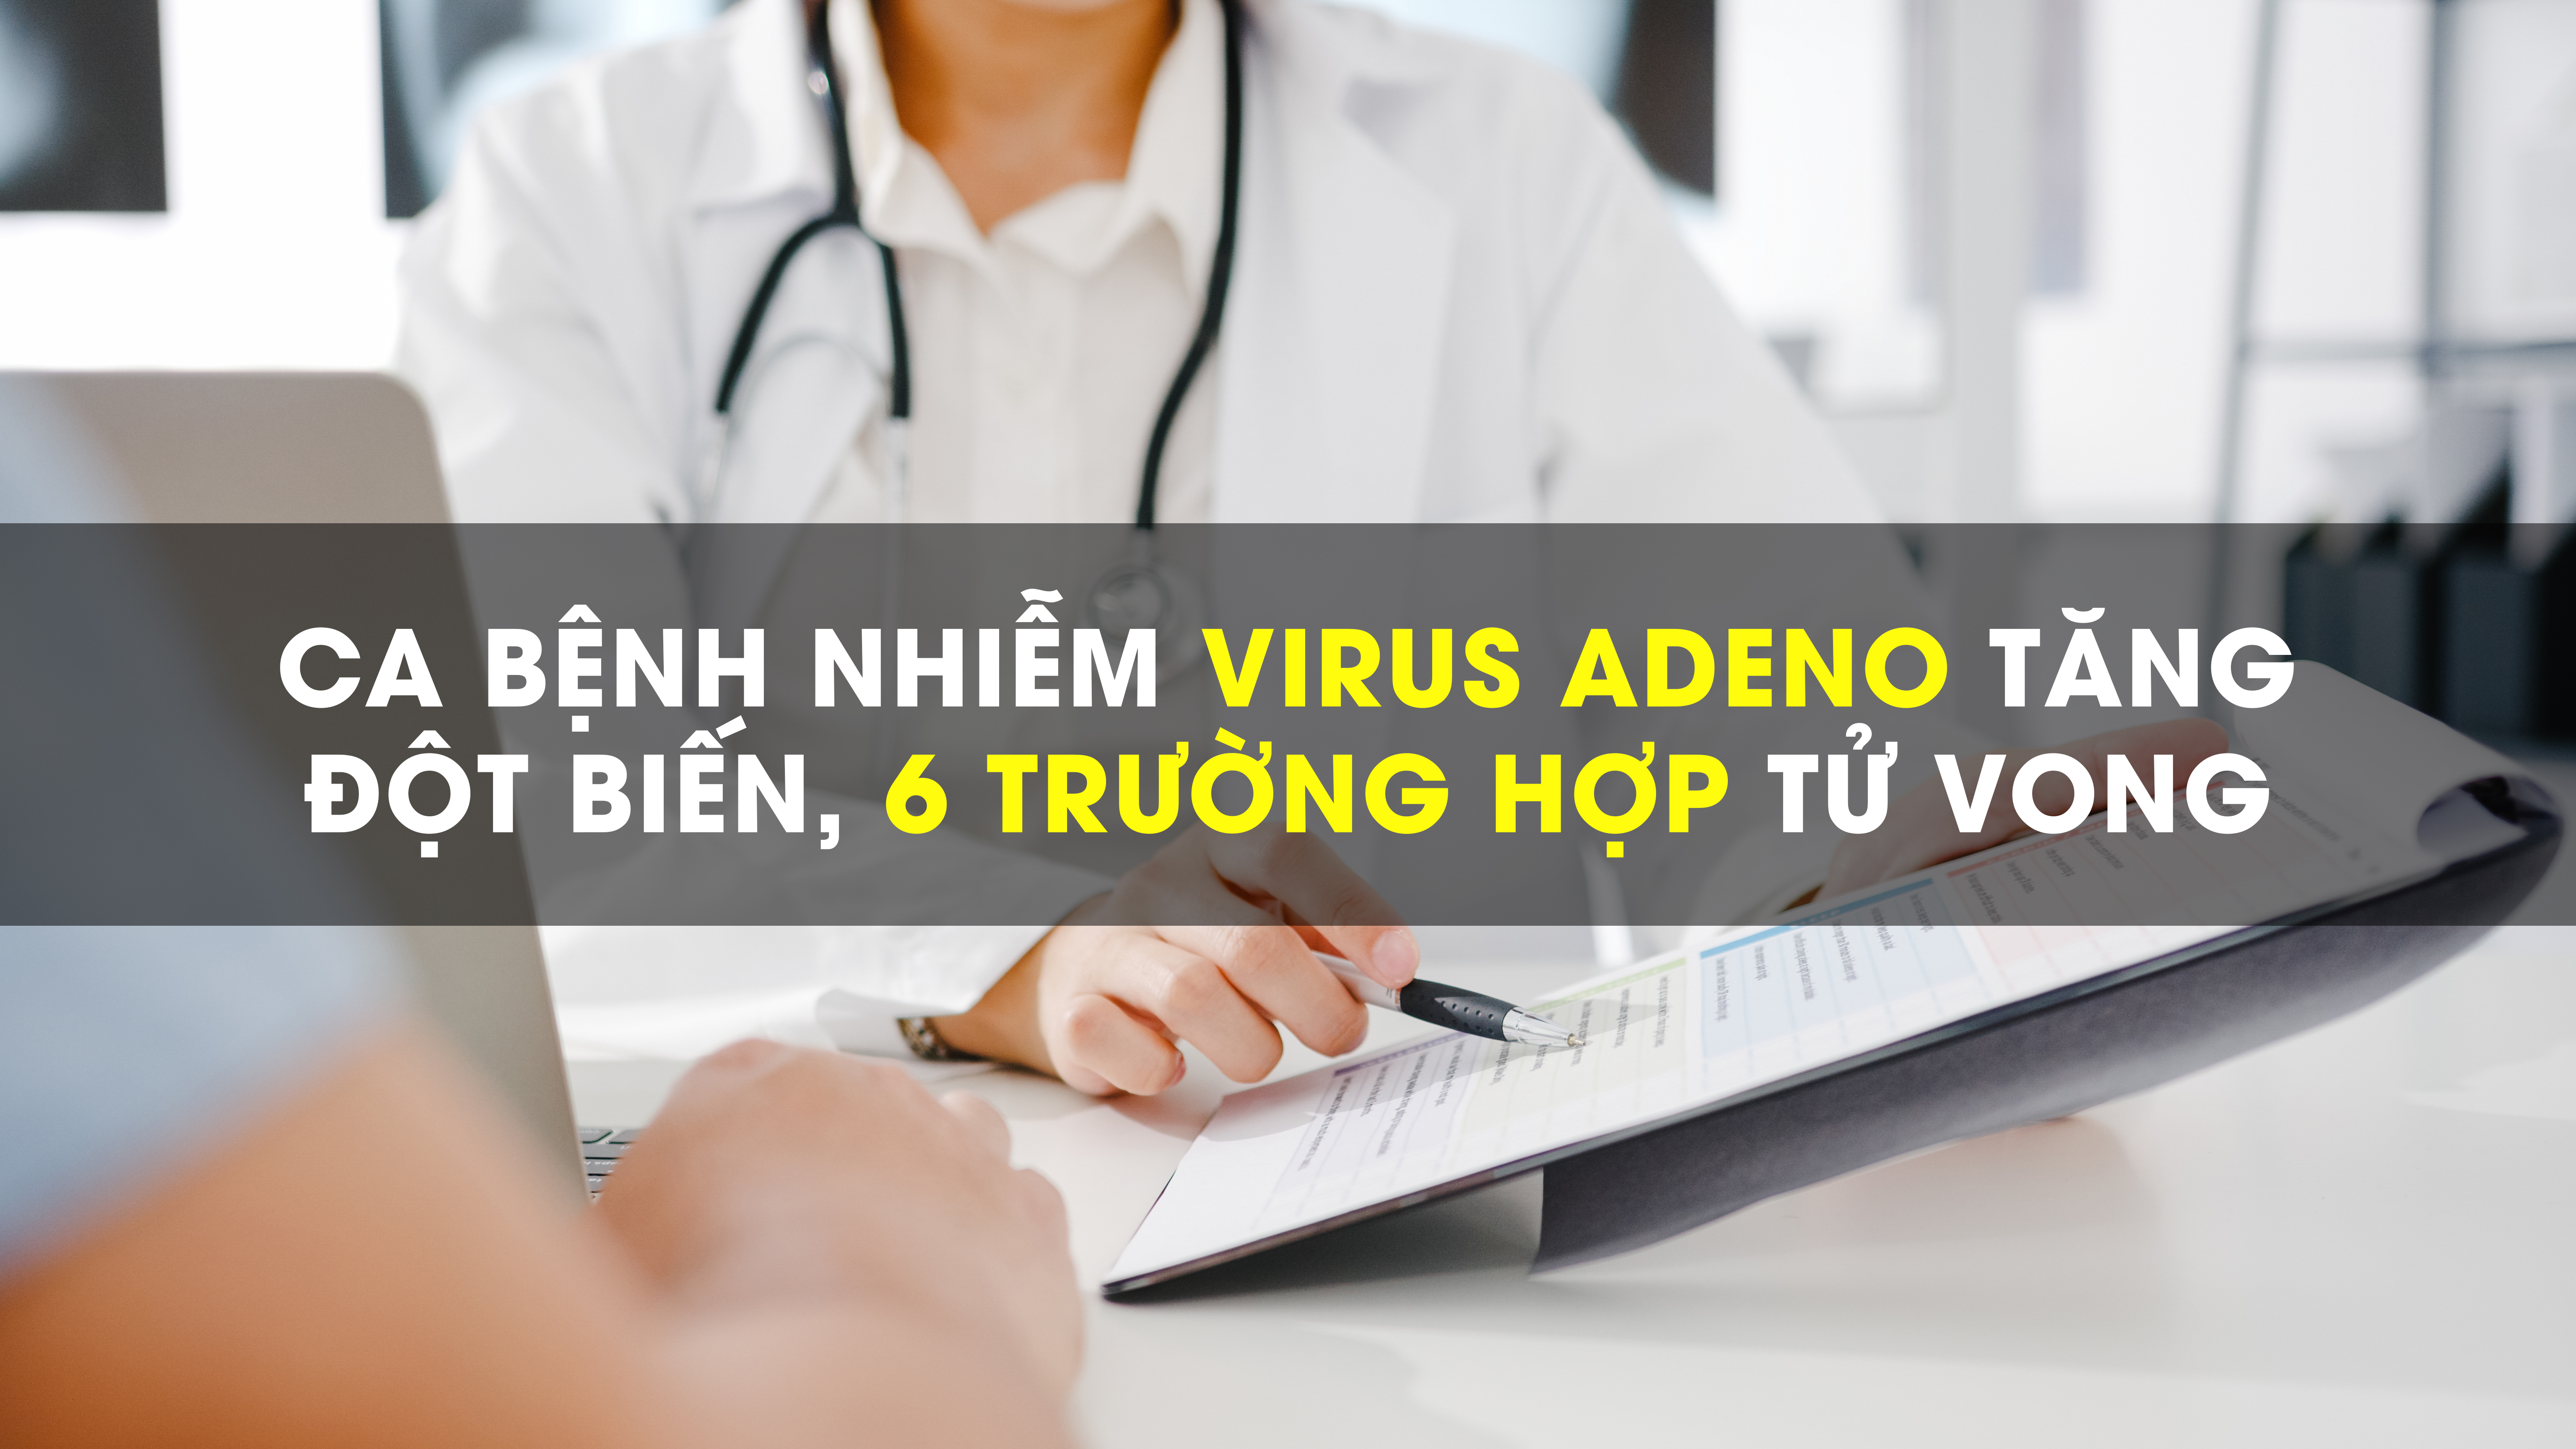 Ca bệnh nhiễm virus Adeno tăng đột biến, đã có 6 trường hợp tử vong 